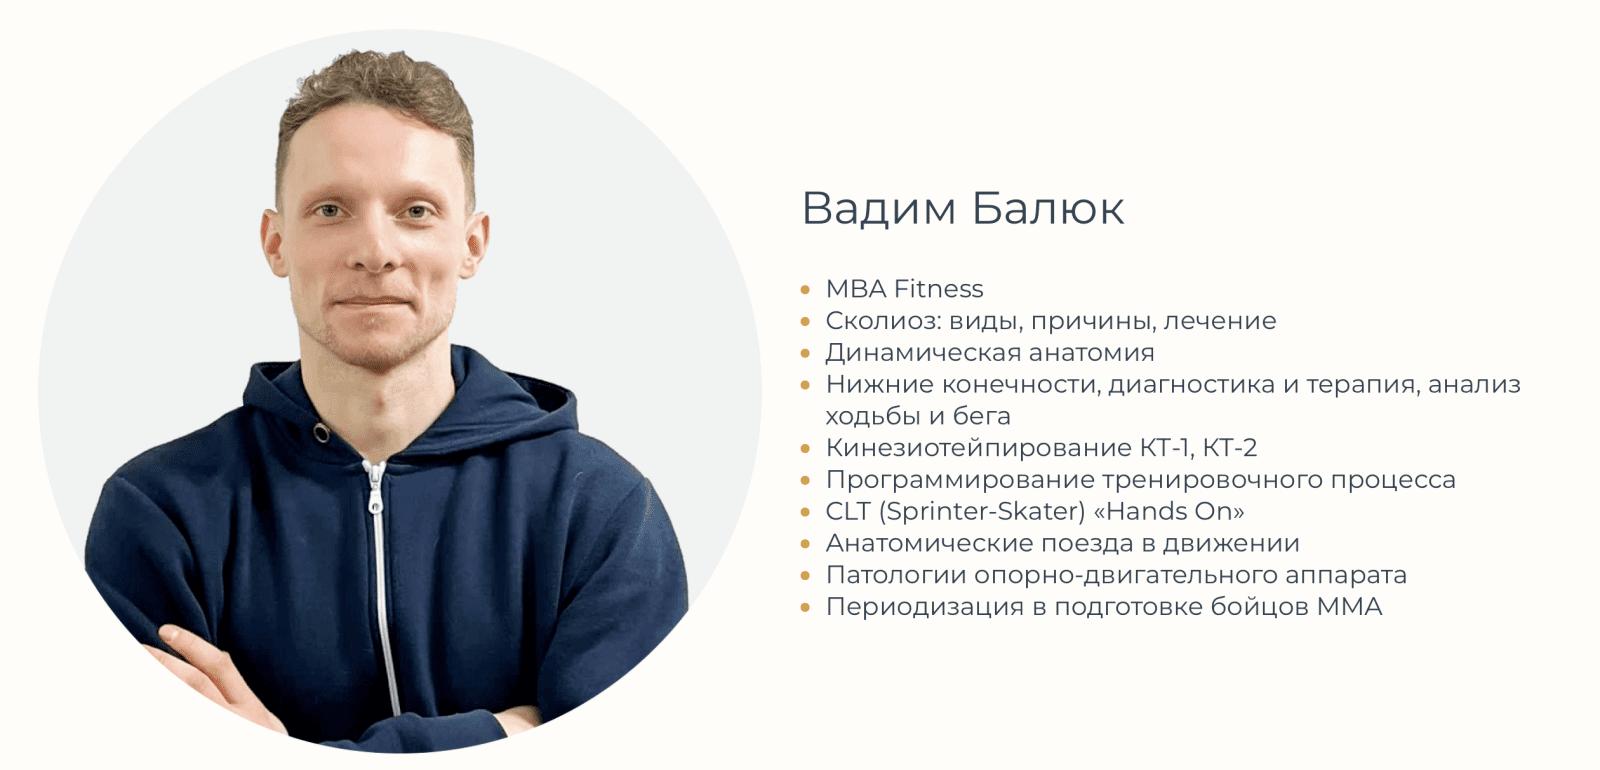 Вадим Балюк - автор курса Упражнение для поясницы